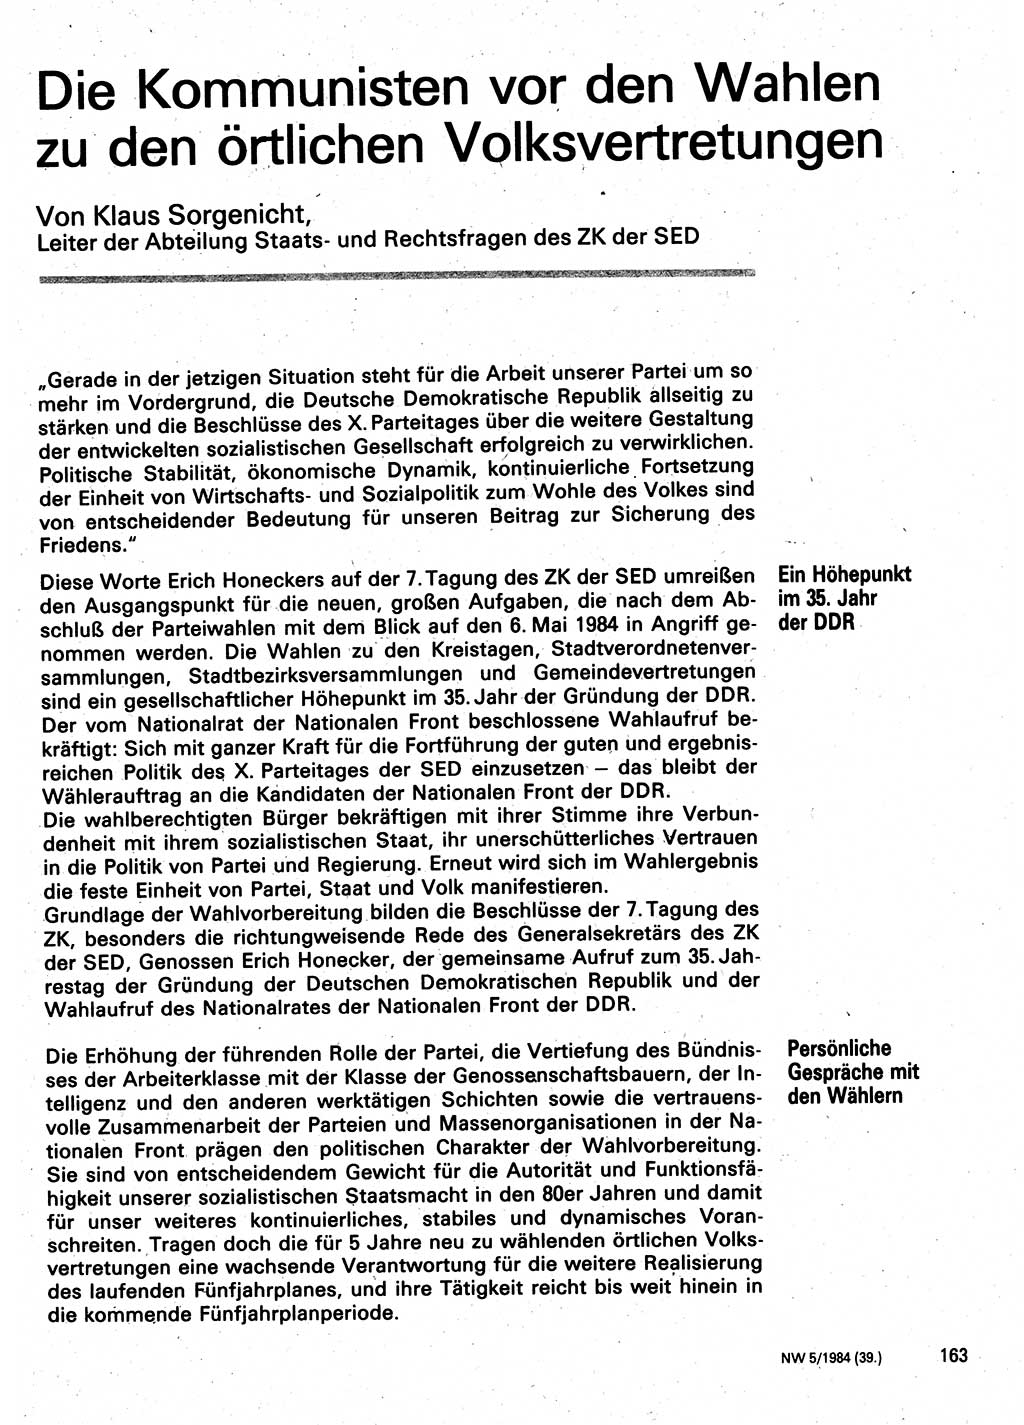 Neuer Weg (NW), Organ des Zentralkomitees (ZK) der SED (Sozialistische Einheitspartei Deutschlands) für Fragen des Parteilebens, 39. Jahrgang [Deutsche Demokratische Republik (DDR)] 1984, Seite 163 (NW ZK SED DDR 1984, S. 163)